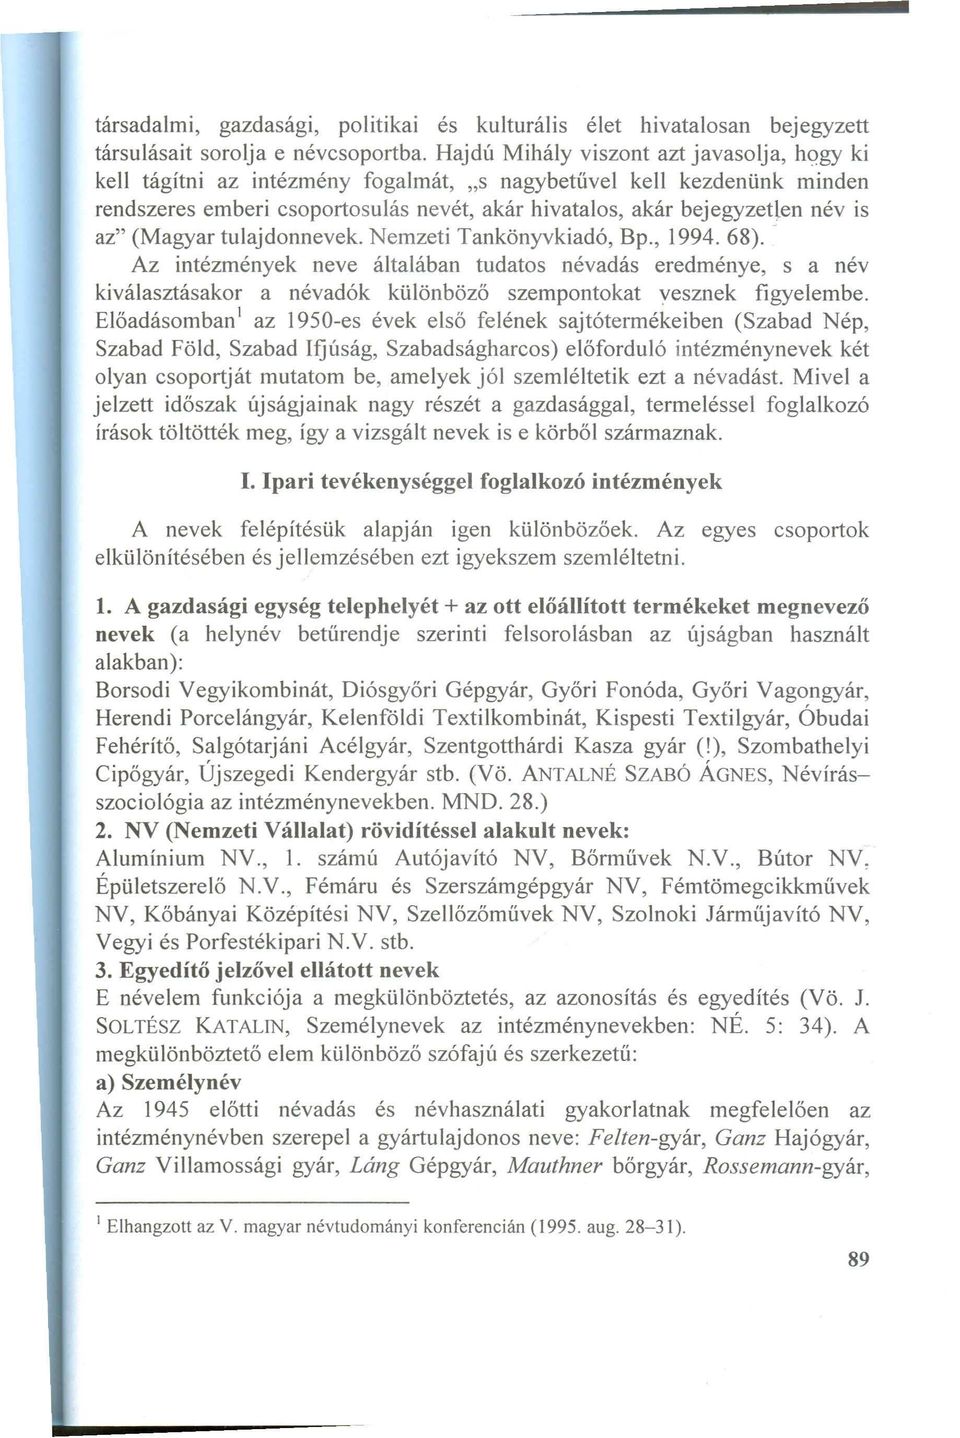 az" (Magyar tulajdonnevek. Nemzeti Tankönyvkiadó, Bp., 1994. 68).